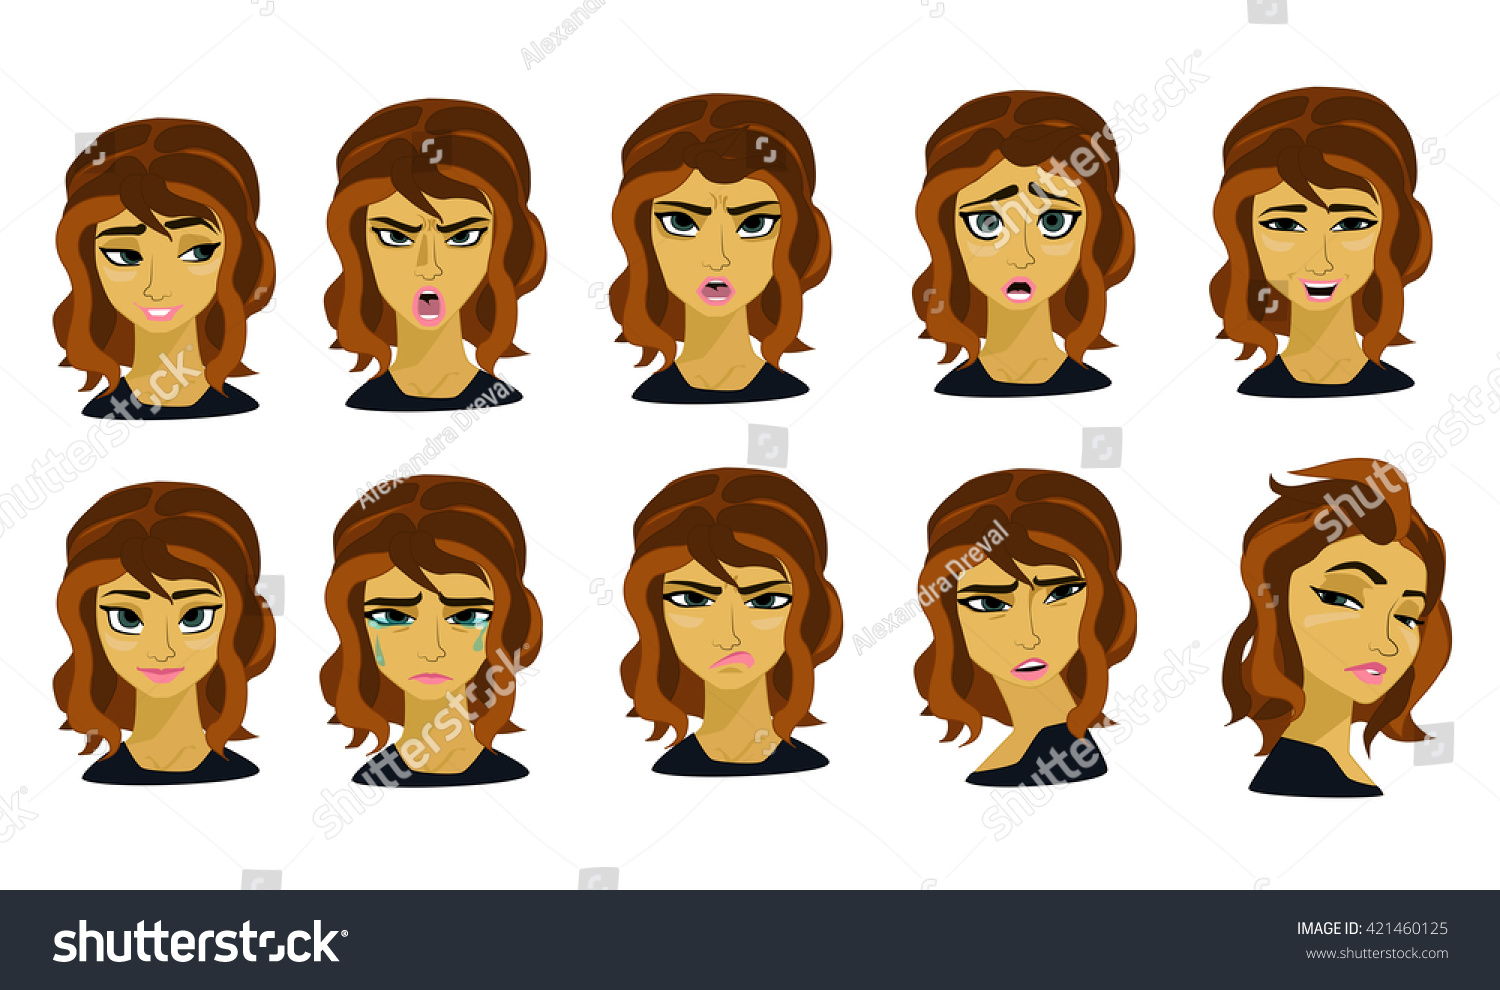 Emotion Stock Vector Illustration 421460125 : Shutterstock